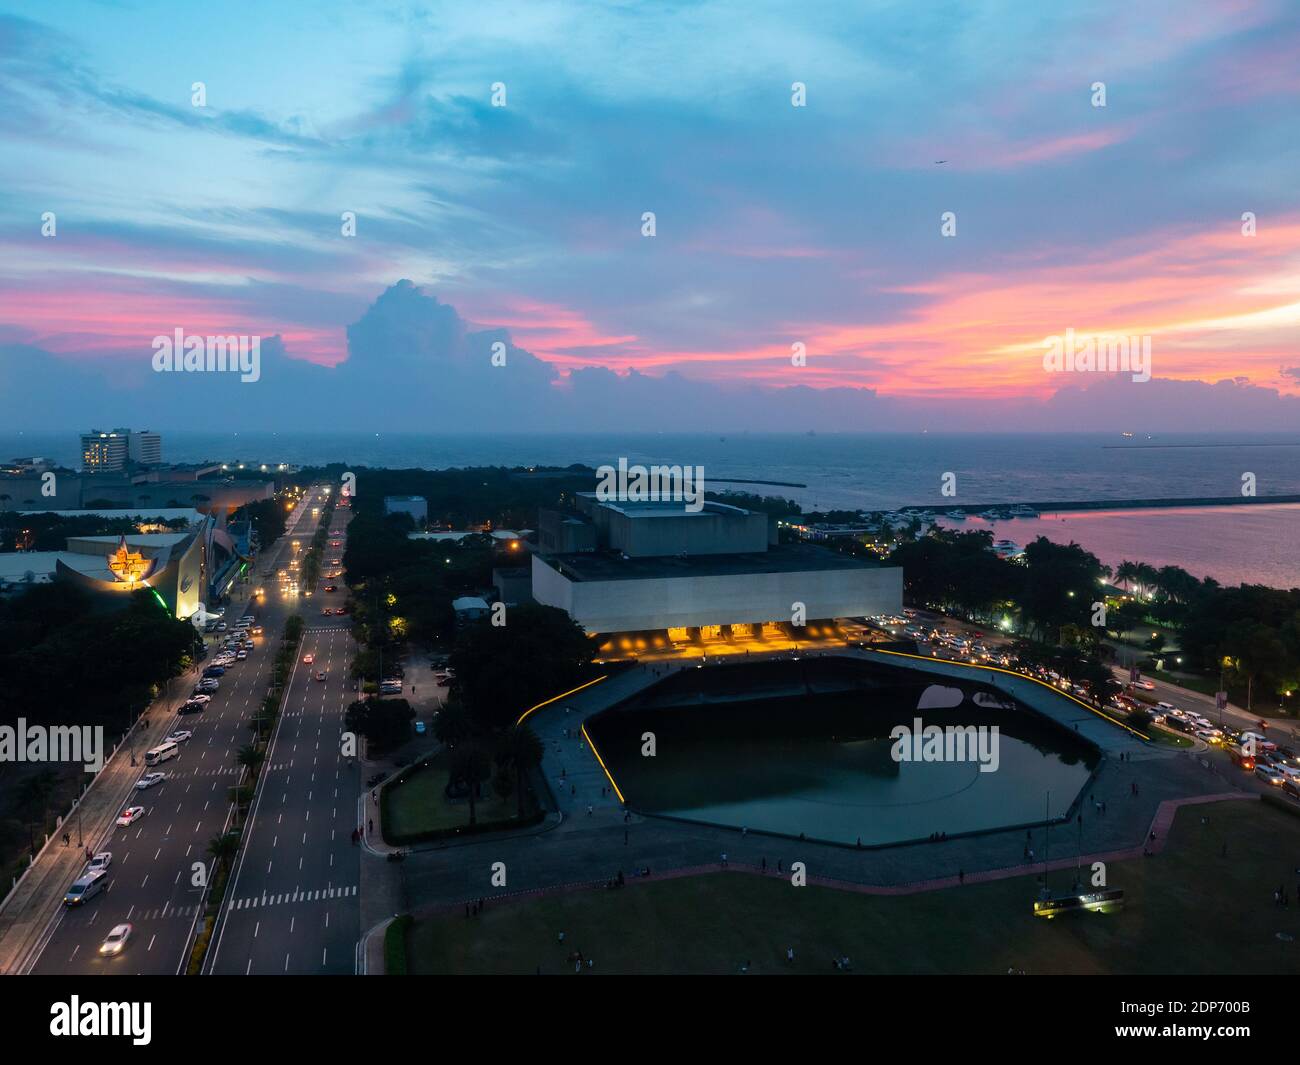 Tanghalang Pambansa, das Nationaltheater, ein Teil des Kulturzentrums der Philippinen, bei Sonnenuntergang mit Manila Bay im Hintergrund. Das Theater Stockfoto